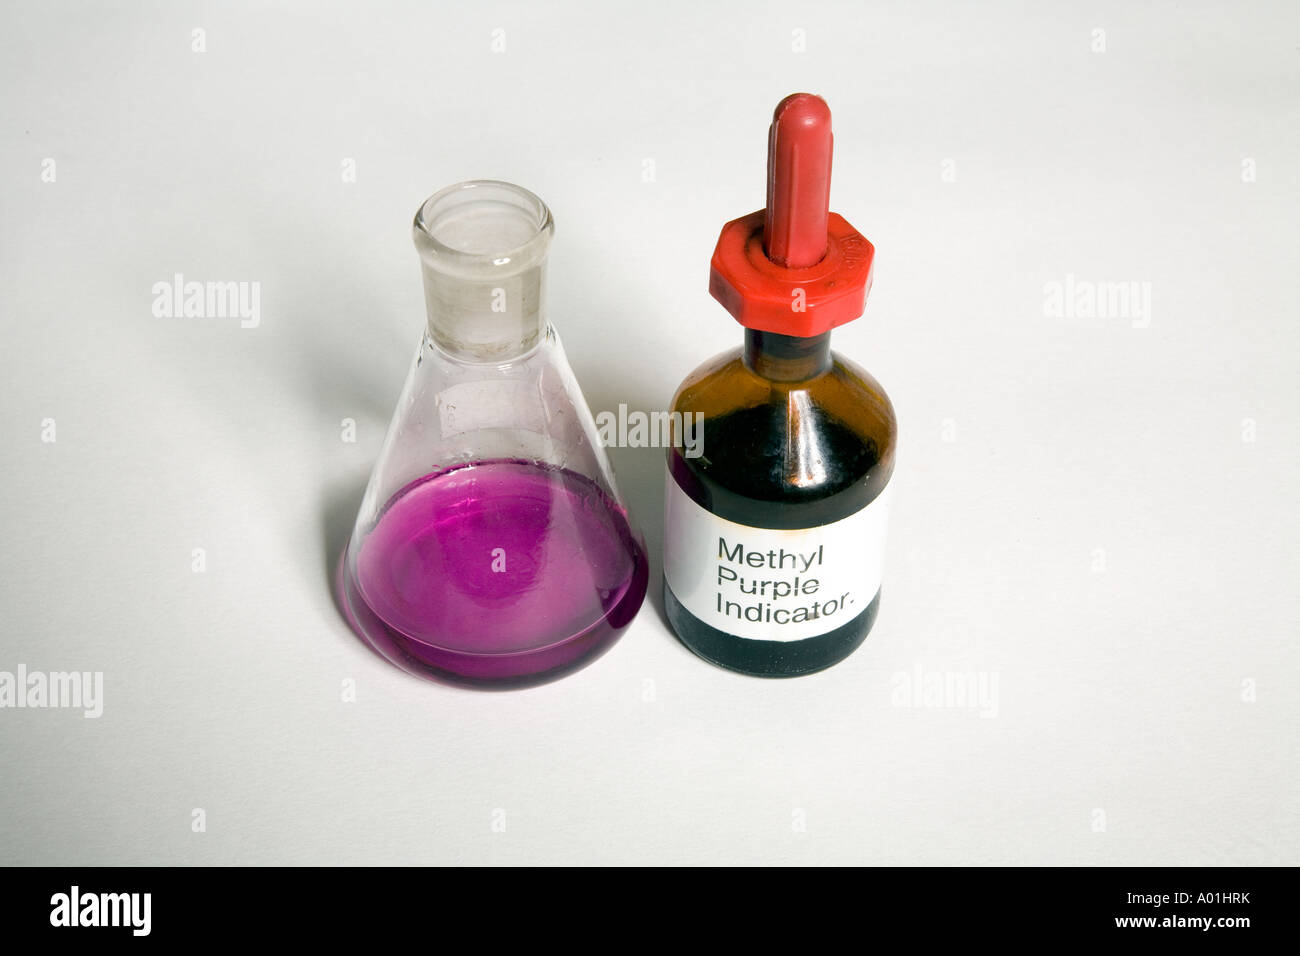 Methyl Purple Indicator bottle and flask Stock Photo - Alamy